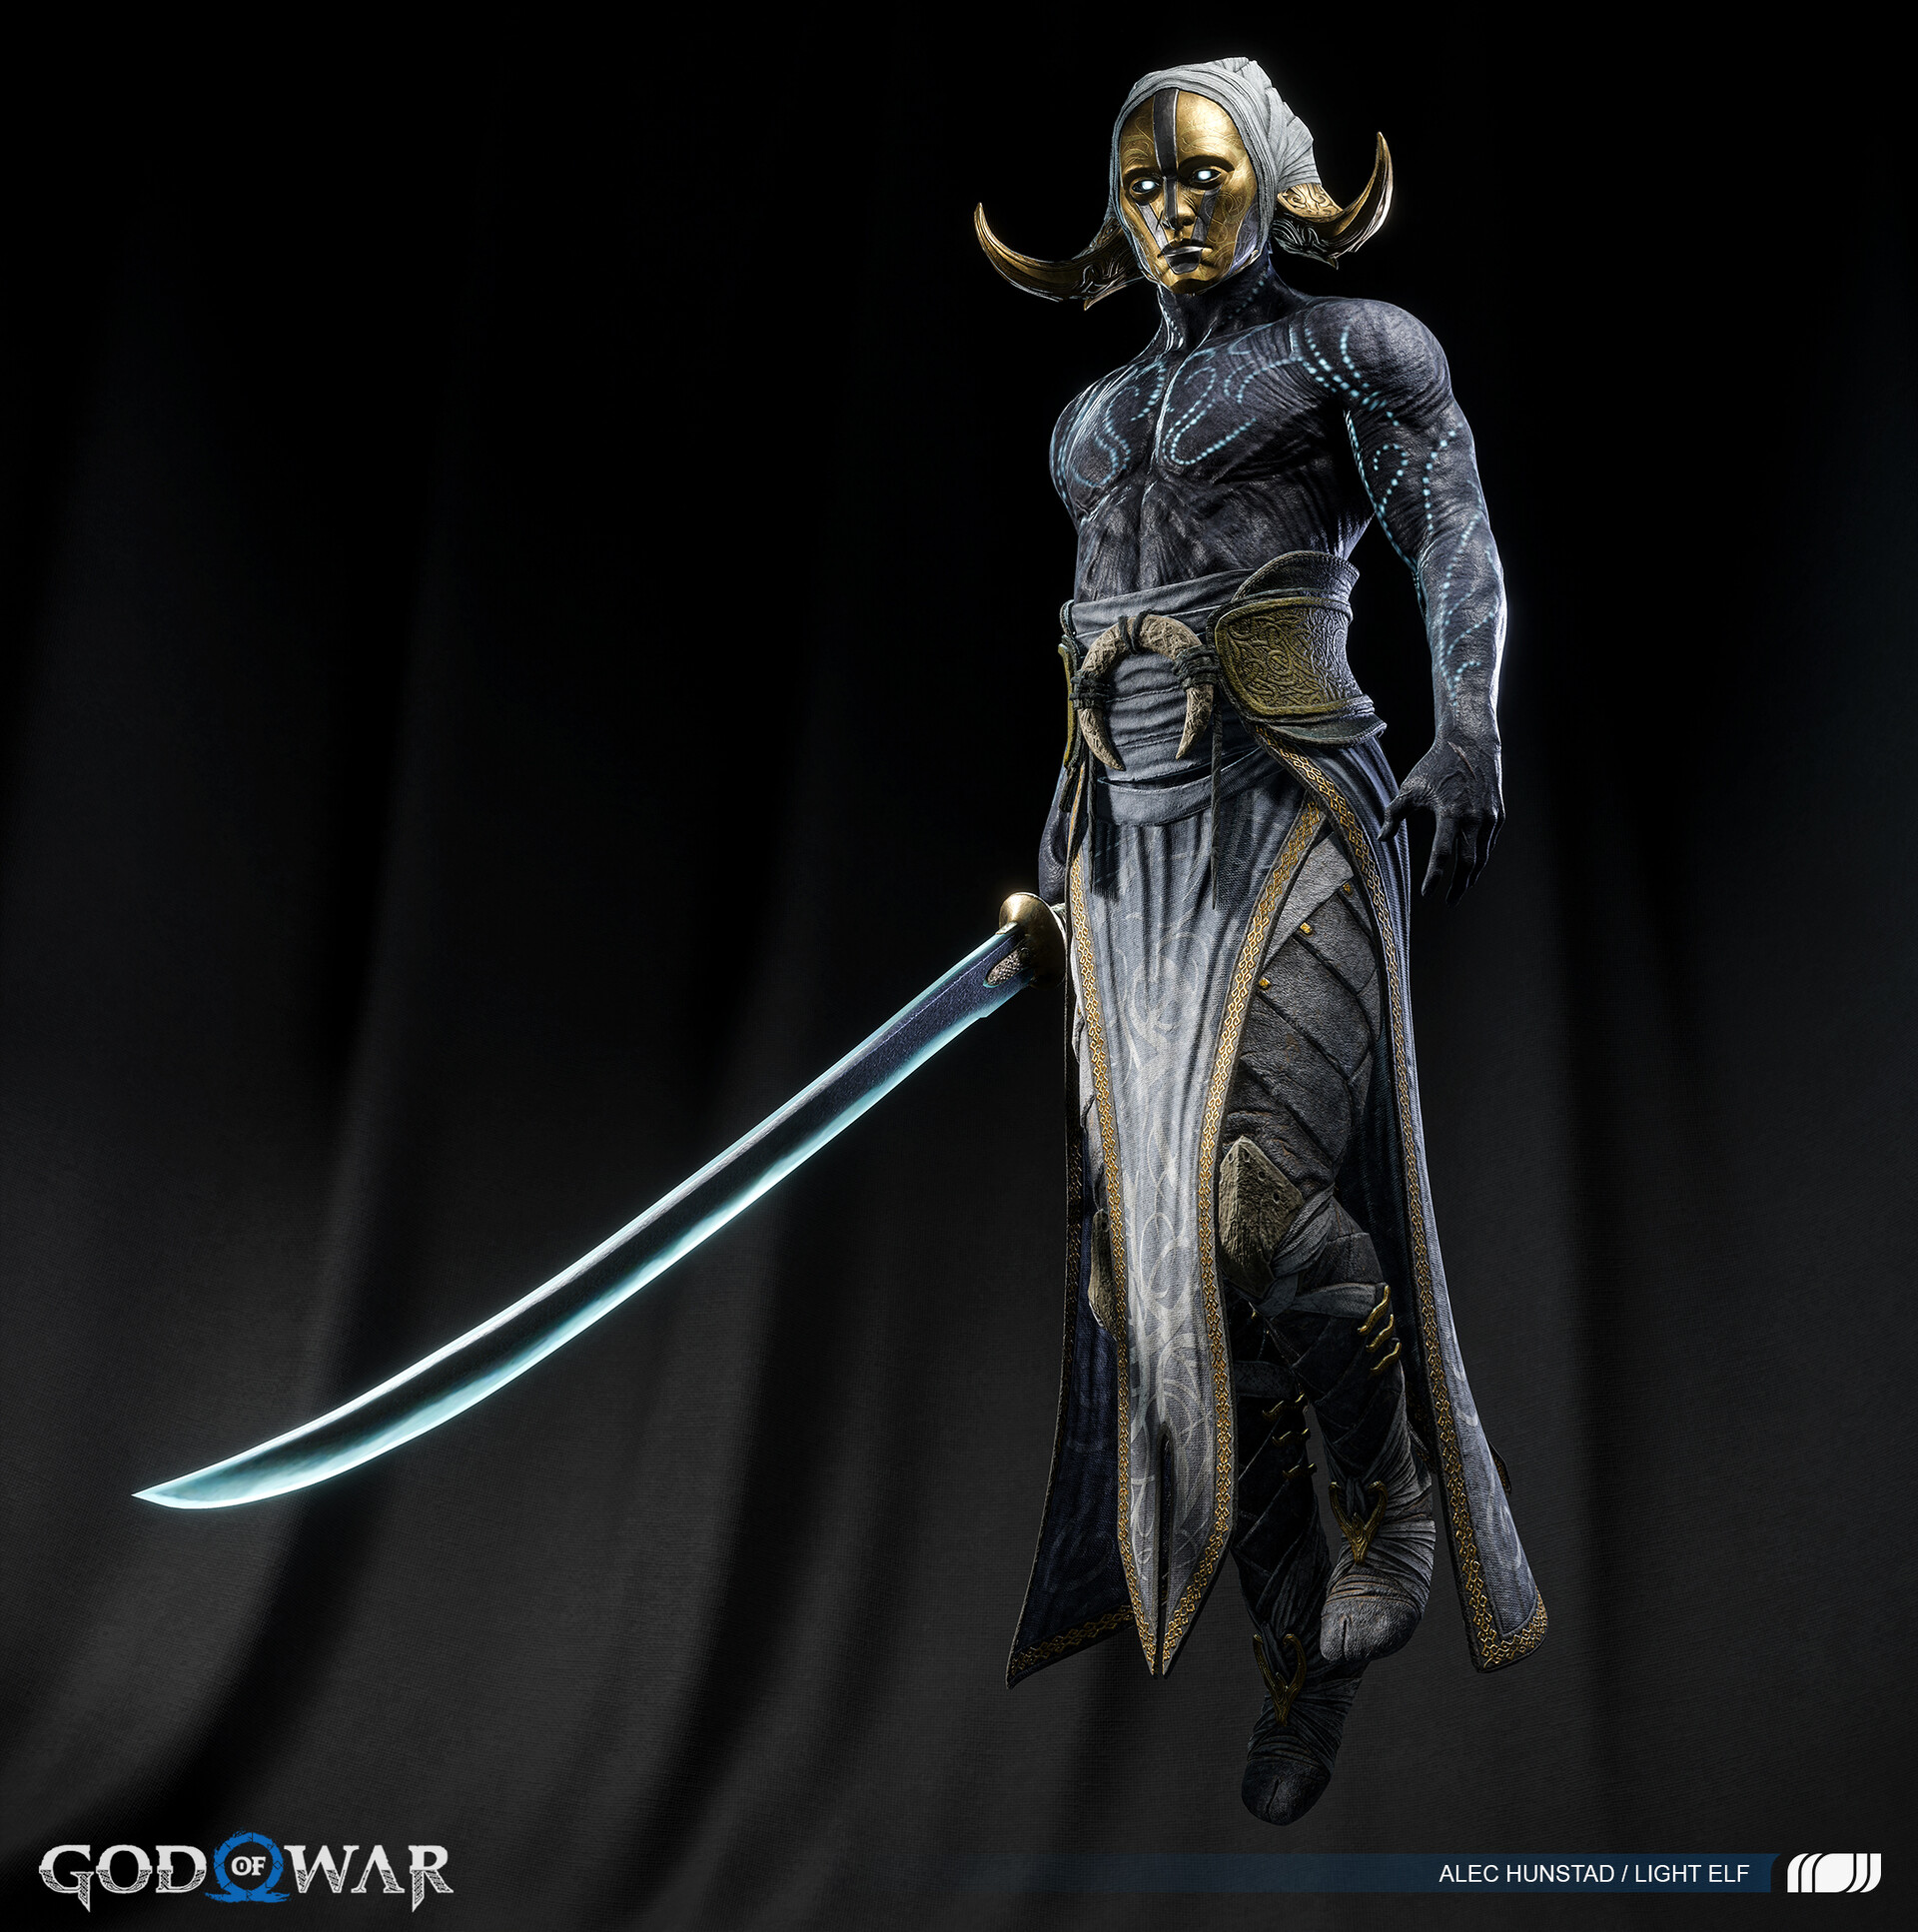 ArtStation - God of War Ragnarok